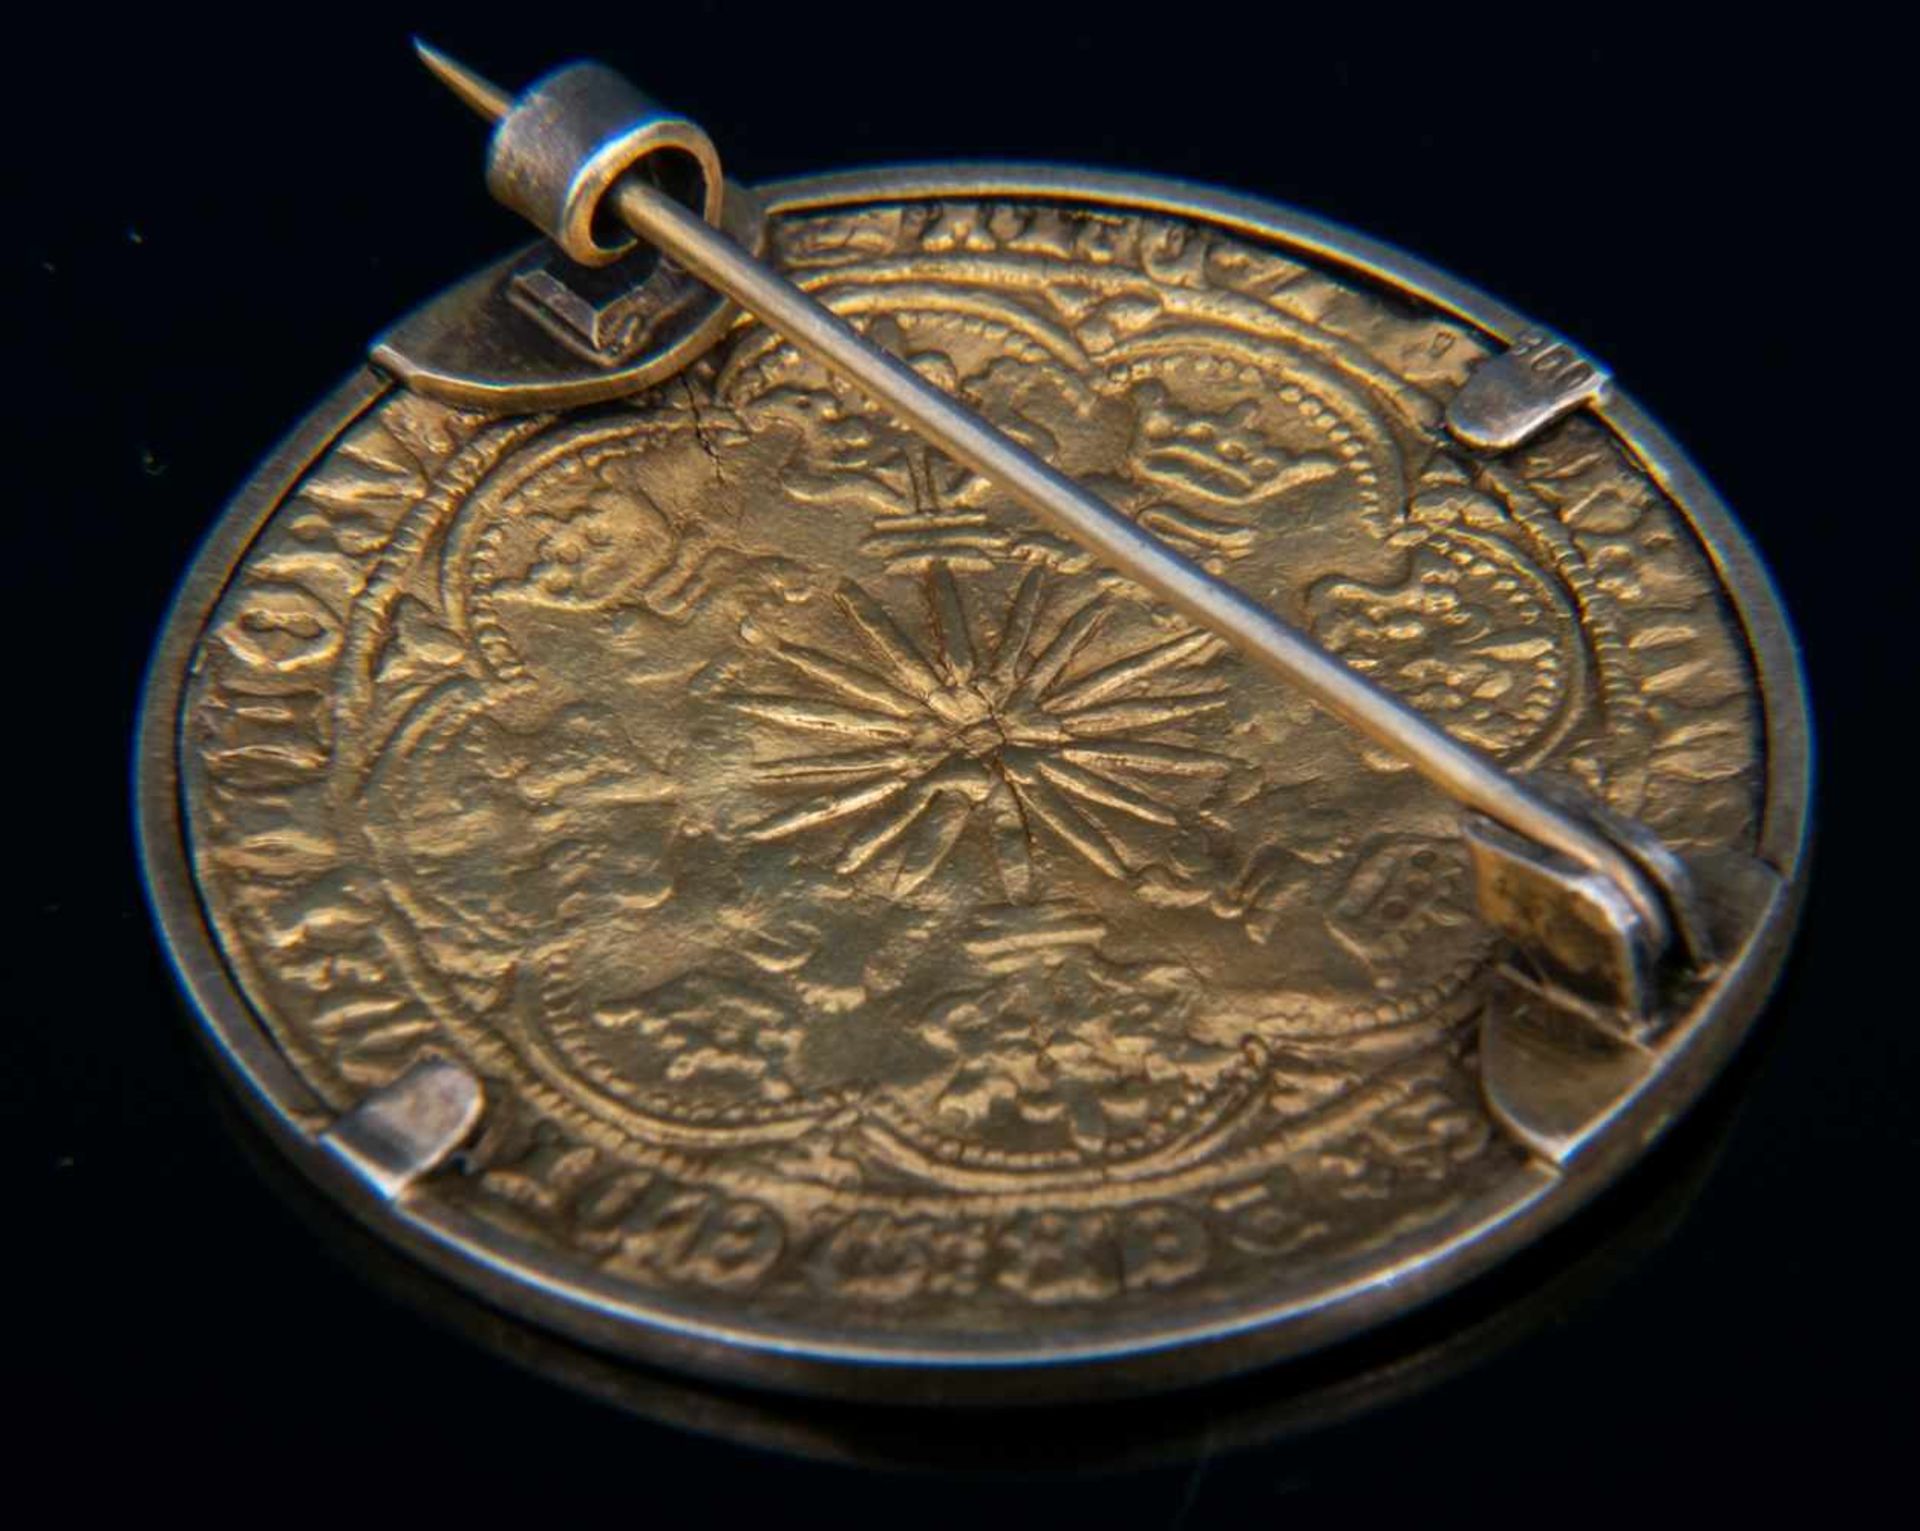 GOLD RYAL / ROSE NOBLE - Goldmünze. England 15. - 17. Jhd., vorderseitig König mit Schwert, Schild & - Bild 9 aus 15